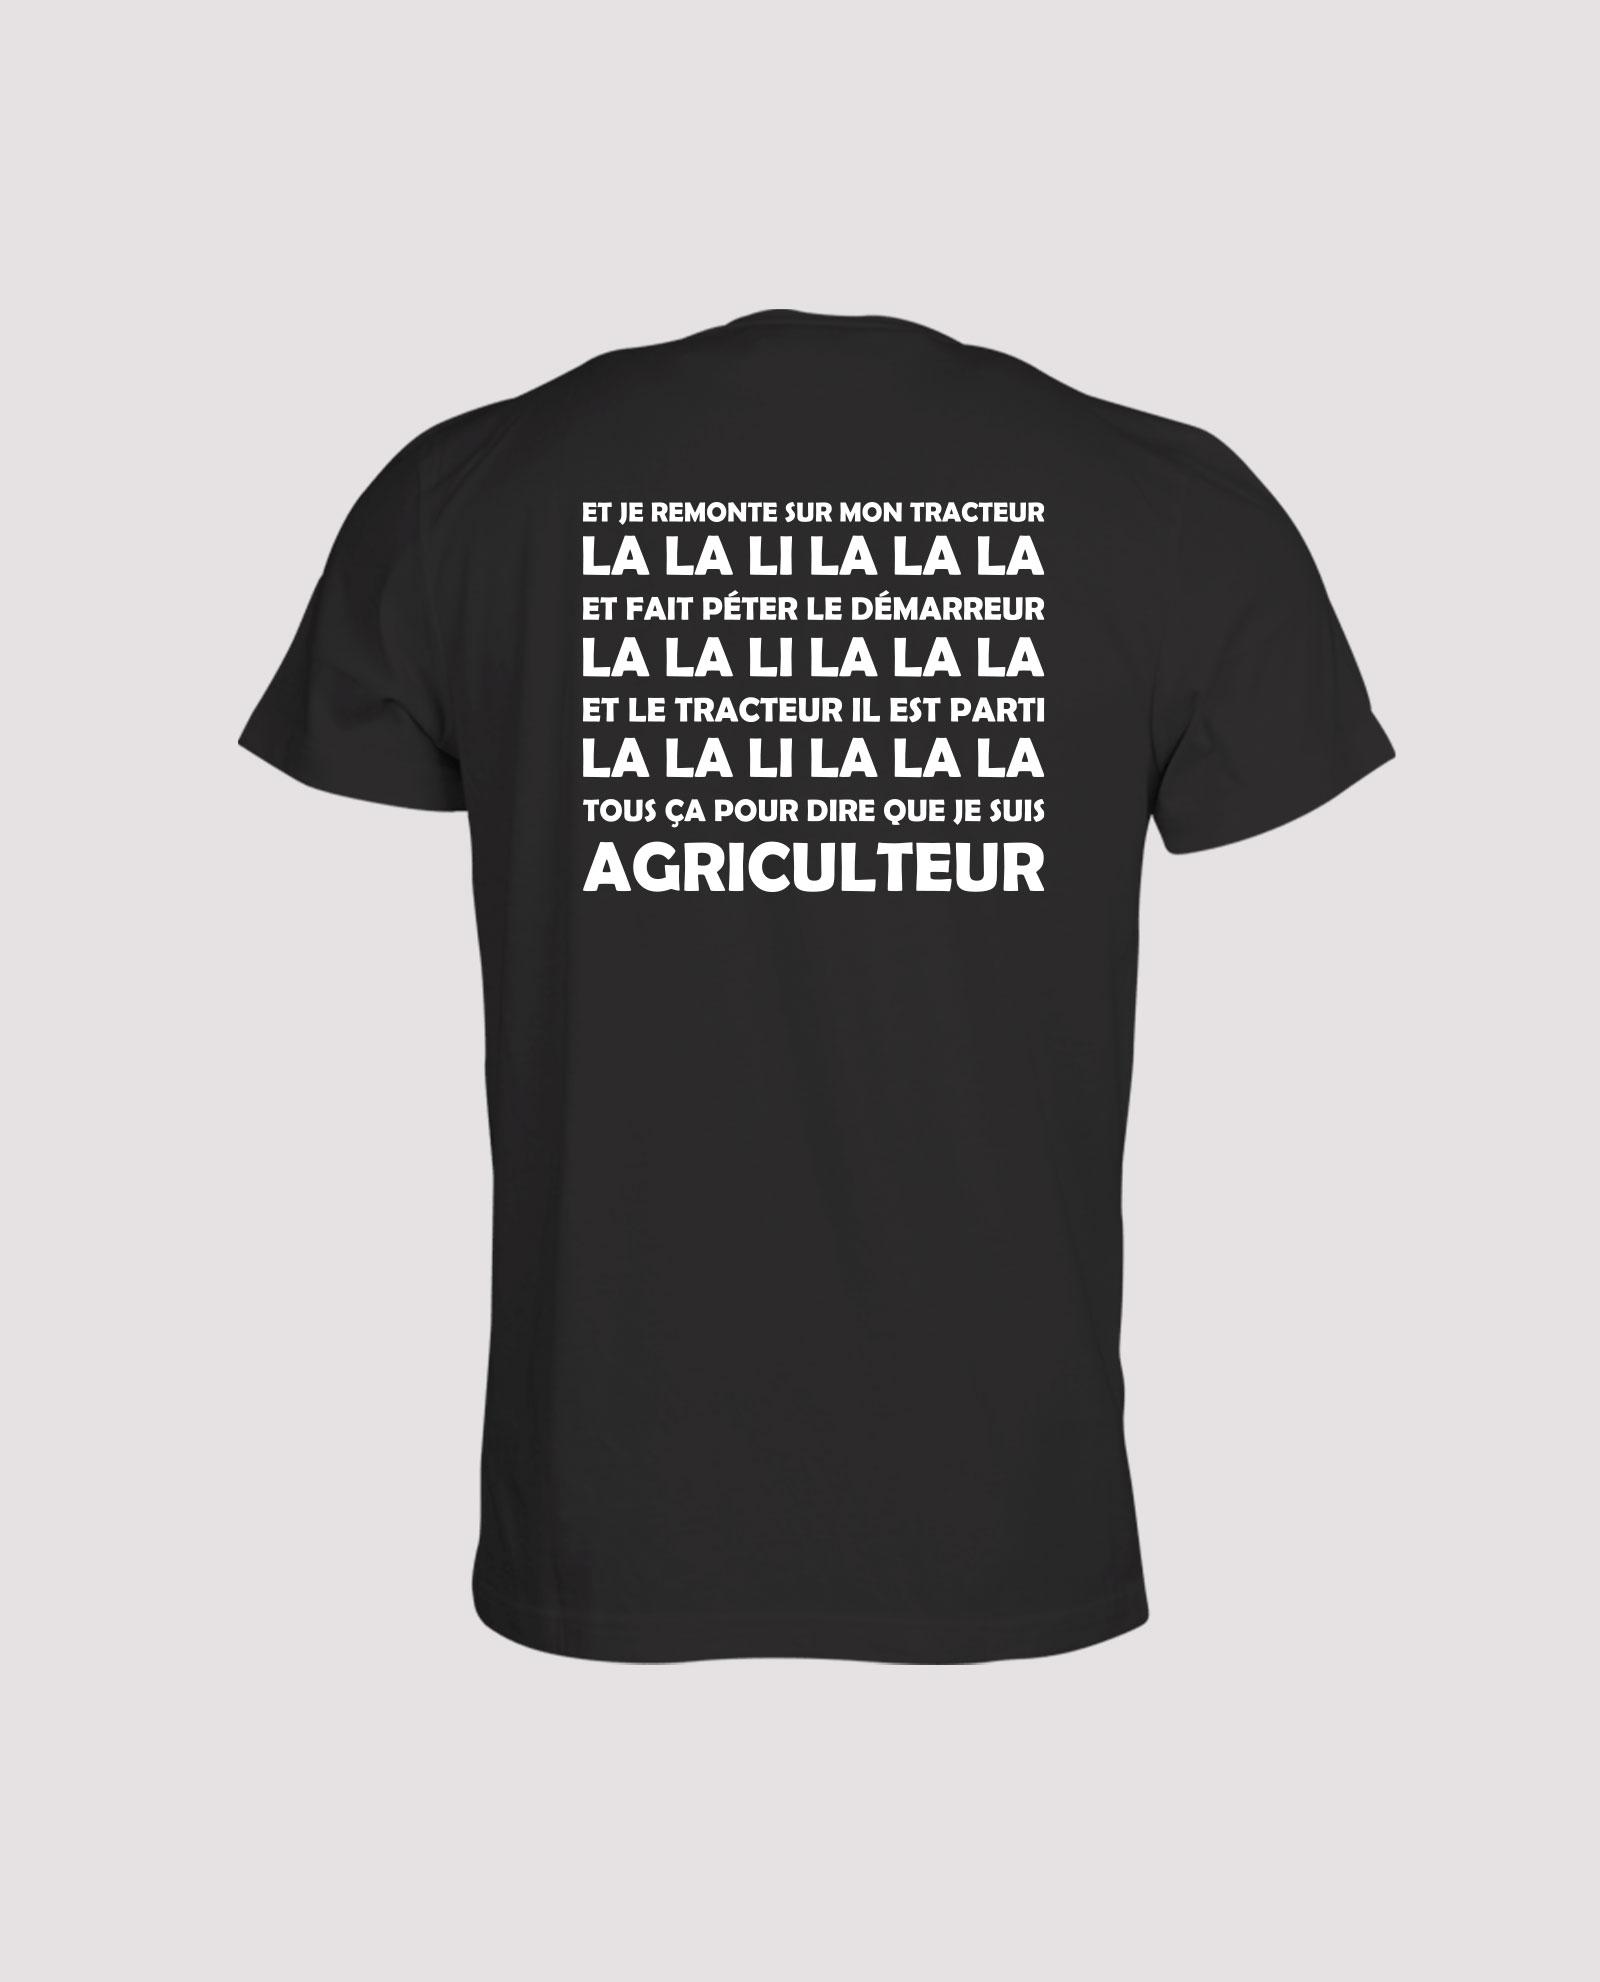 la-ligne-shop-t-shirt-noir-recto-verso-chant-supporter-rugby-benejacq-et-je-remonte-sur-mon-tracteur-la-la-li-la-la-la